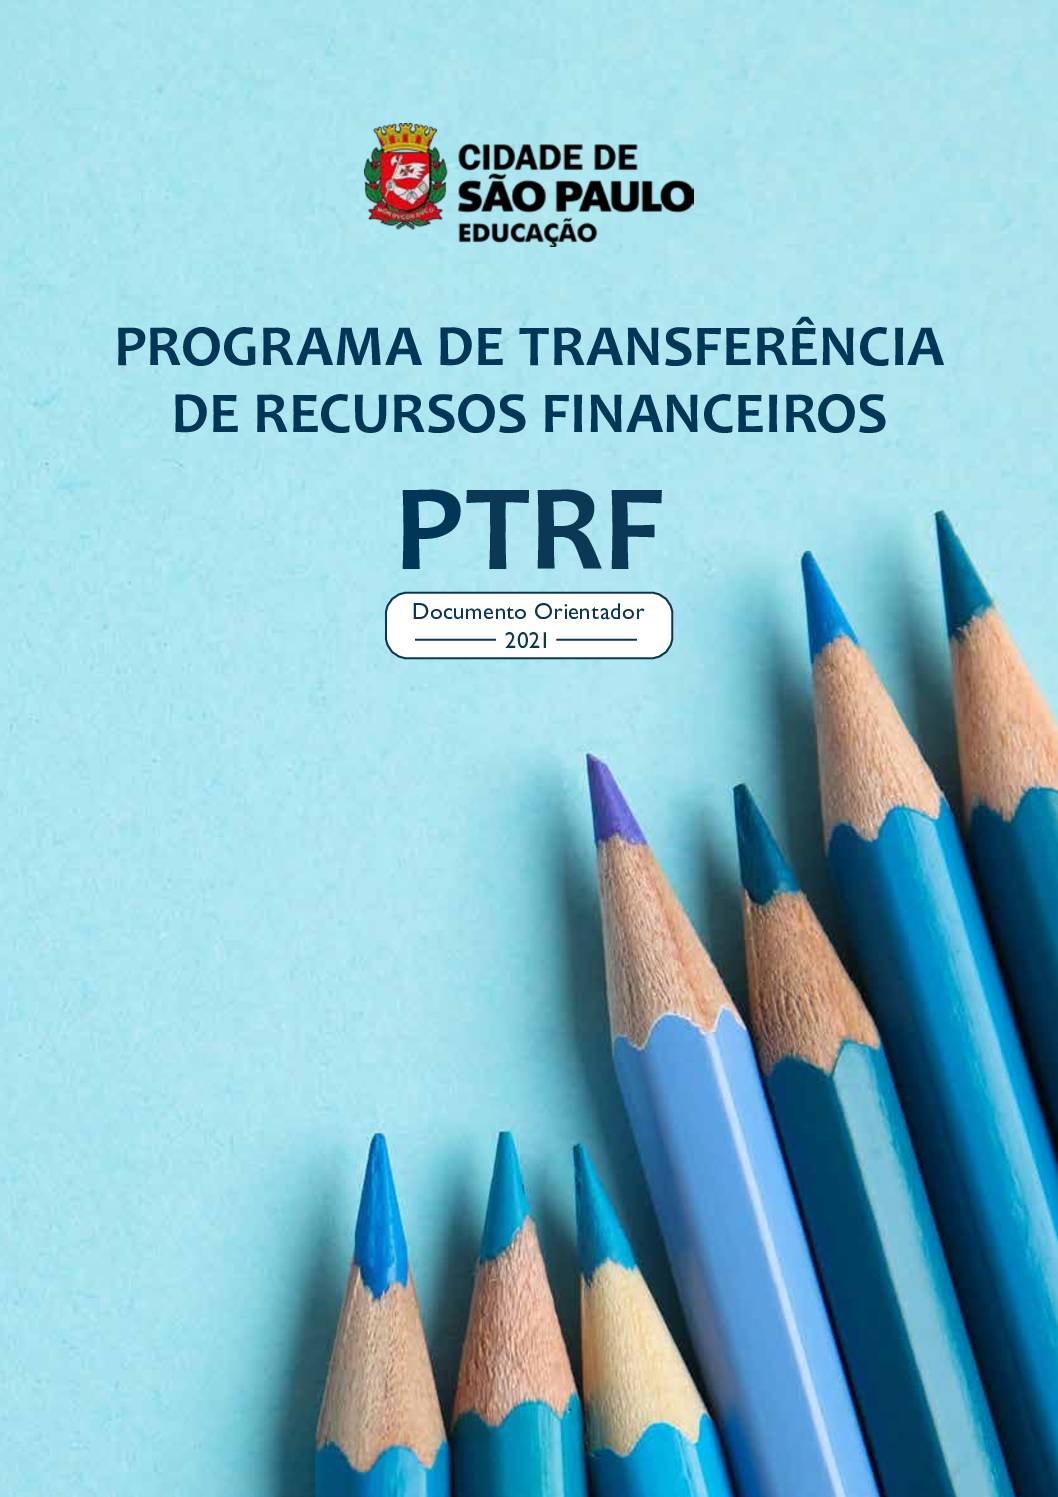 Documento orientador do Programa de Transferência de Recursos Financeiros - PTRF,  instituído pela Lei Municipal nº 13.991, de 10 de junho de 2005, regido pelos Decretos Municipais nº 46.230, de 23 de agosto de 2005, e nº 47.837, de 31 de outubro de 2006, e pela Portaria SME nº 4.554, de 11 de novembro de 2008, que tem como objetivo garantir maior autonomia às Unidades Educacionais da Rede Municipal de Ensino de São Paulo por meio da transferência de recursos consignados no orçamento municipal às Associações de Pais e Mestres – APMs e às Associações de Pais, Mestres, Servidores, Usuários e Amigos do CEU – APMSUACs.